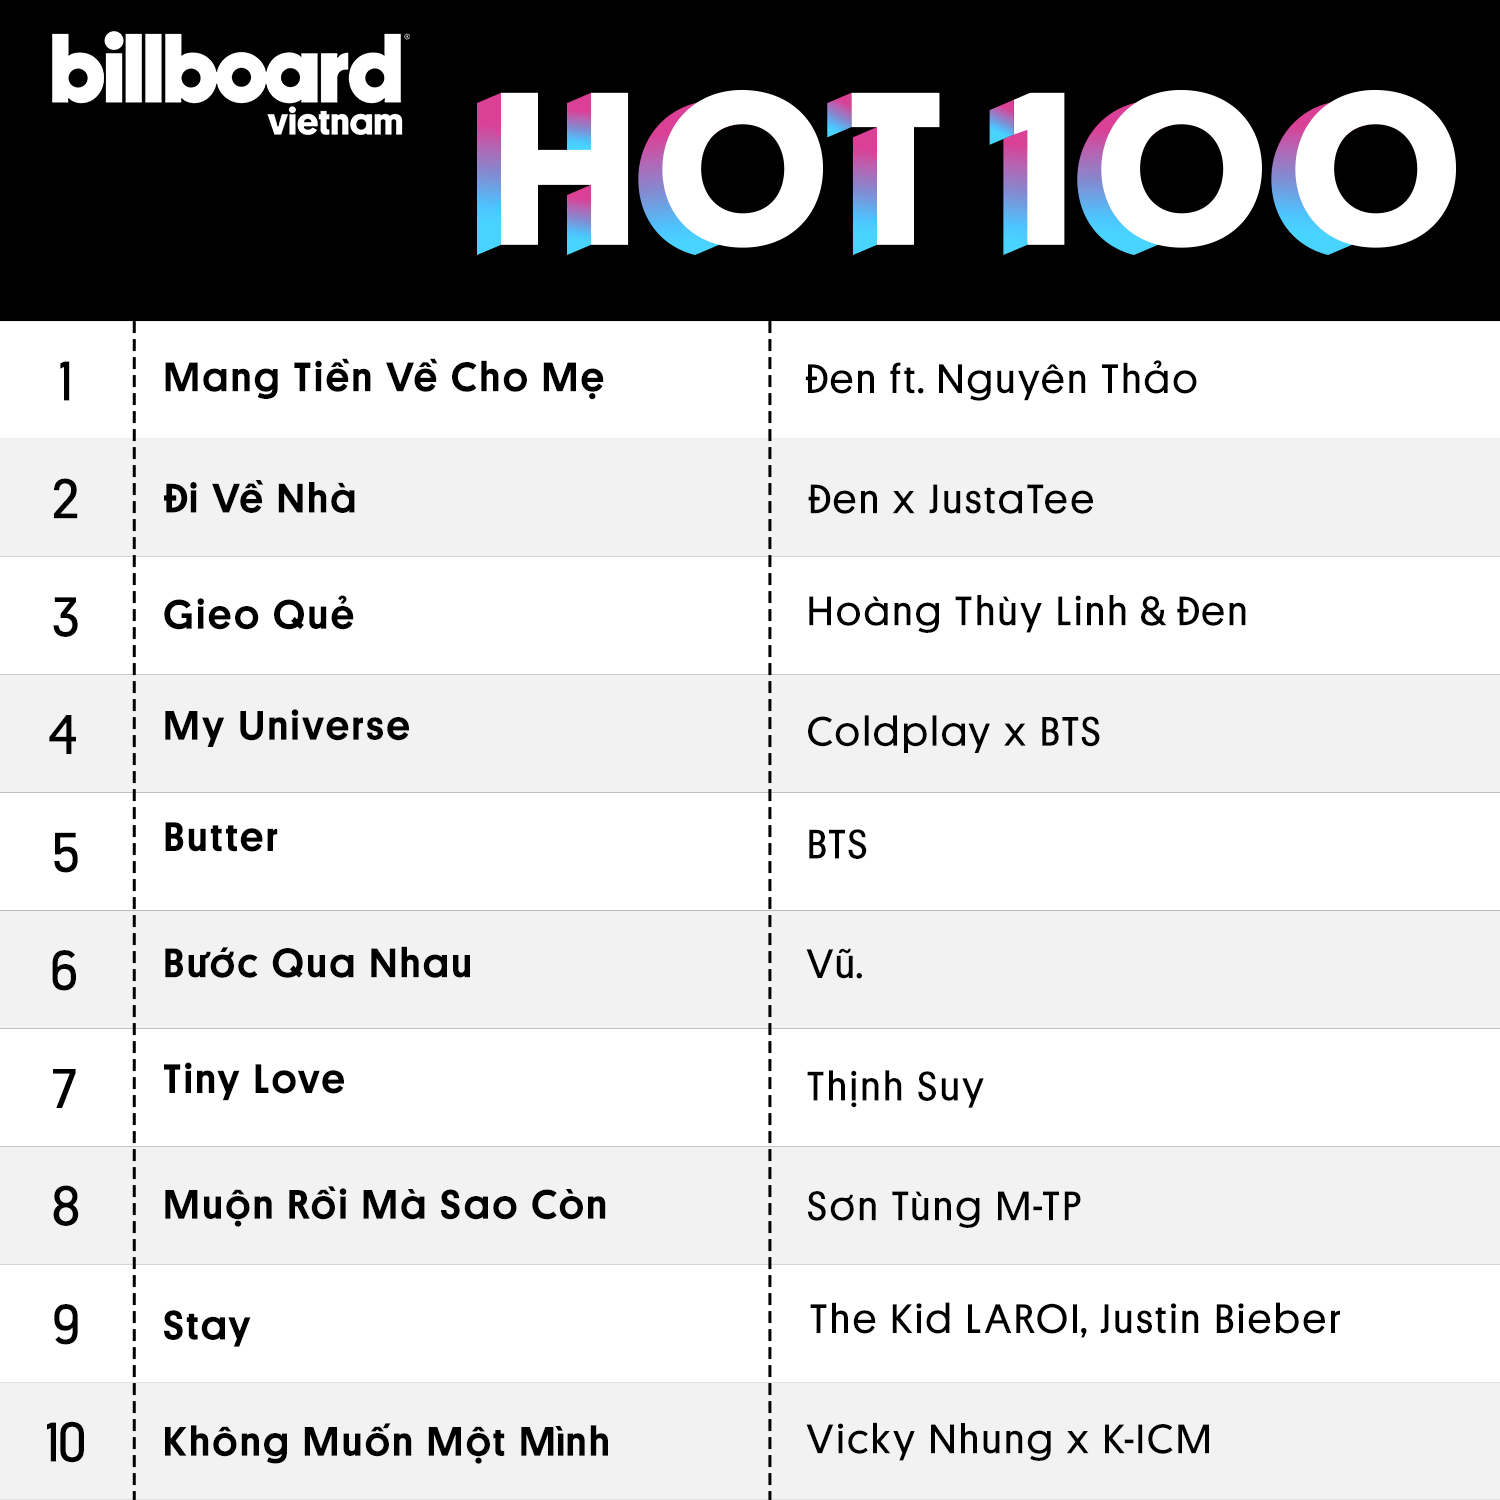 Top 10 ca khúc ấn tượng bao gồm cả Việt Nam và quốc tế được nghe nhiều trong tuần.